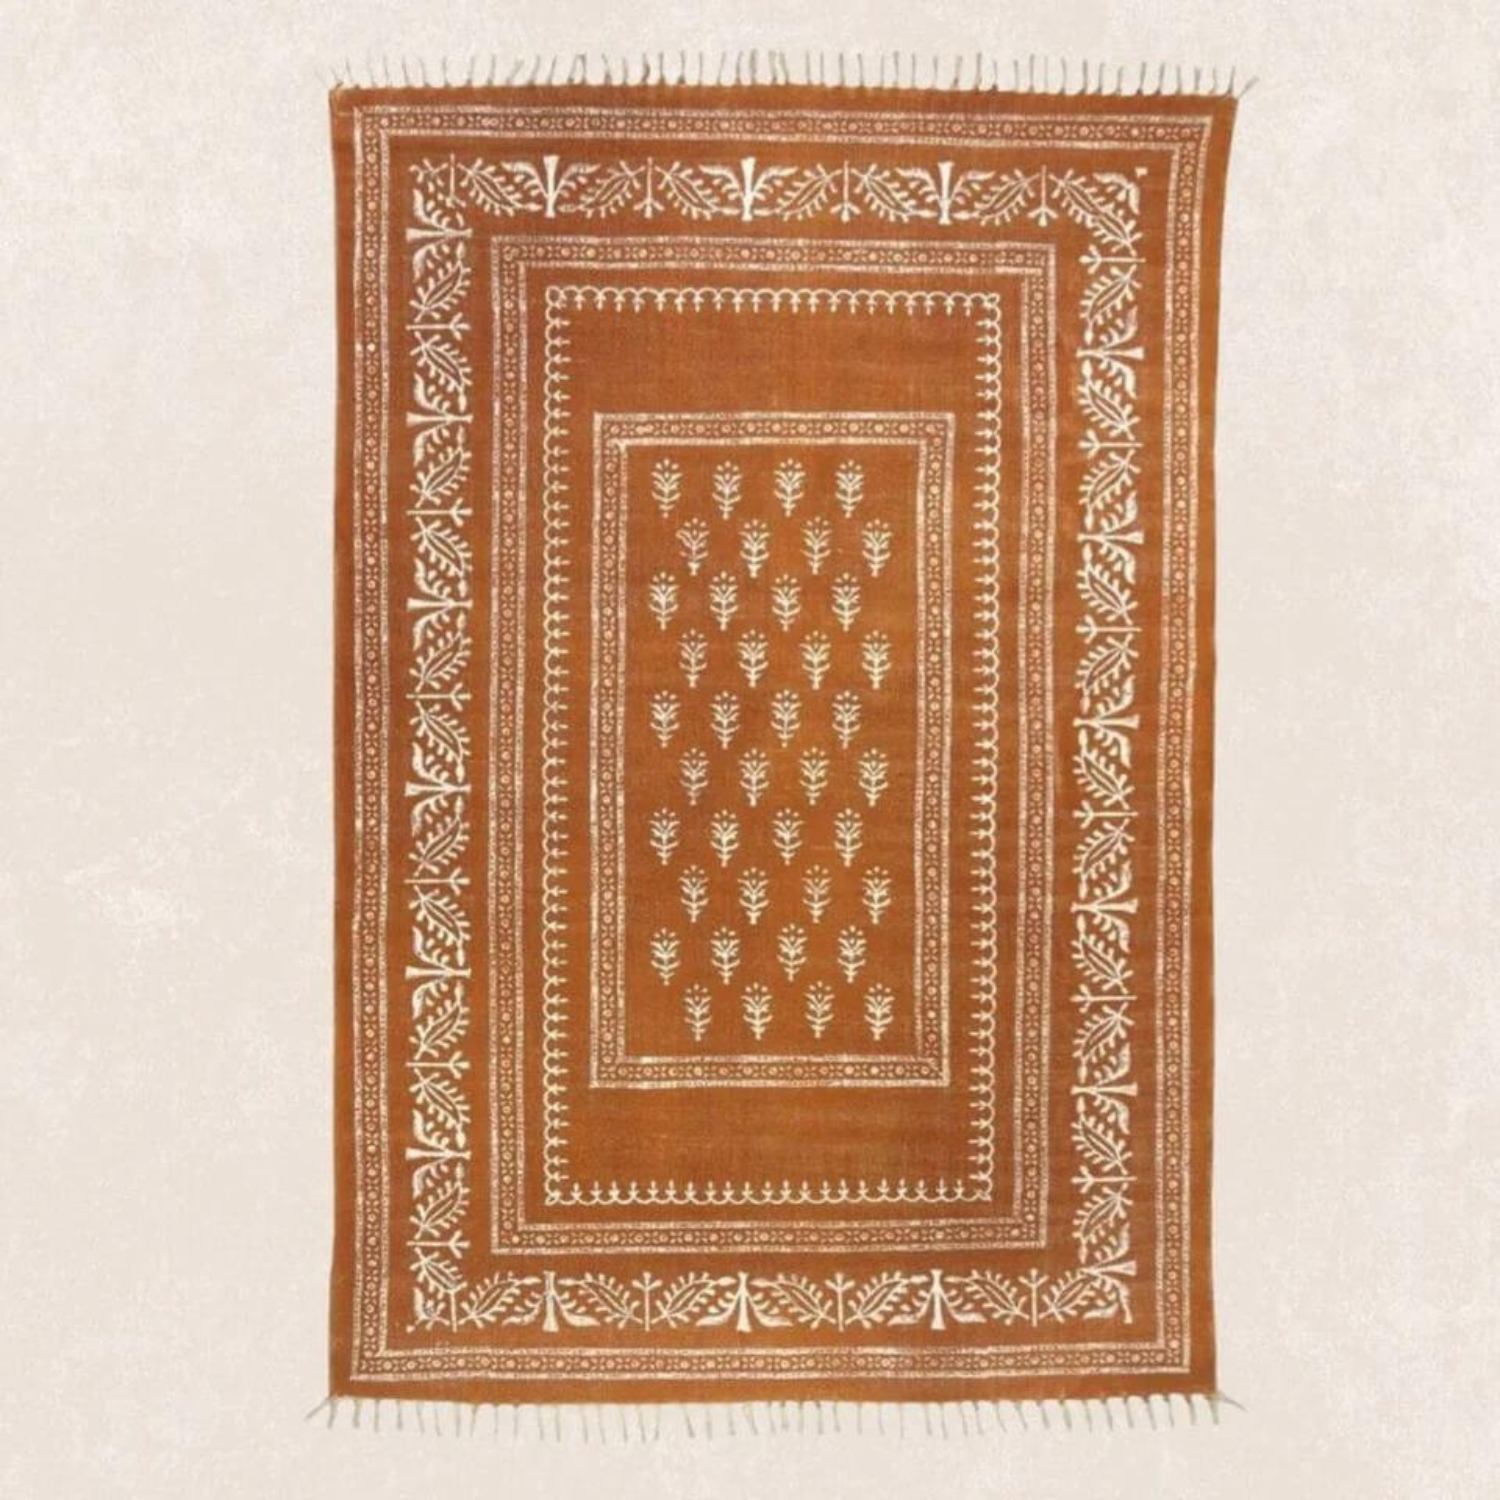 Orientalischer Teppich mit Handblock Druck 140x200cm / Zafran